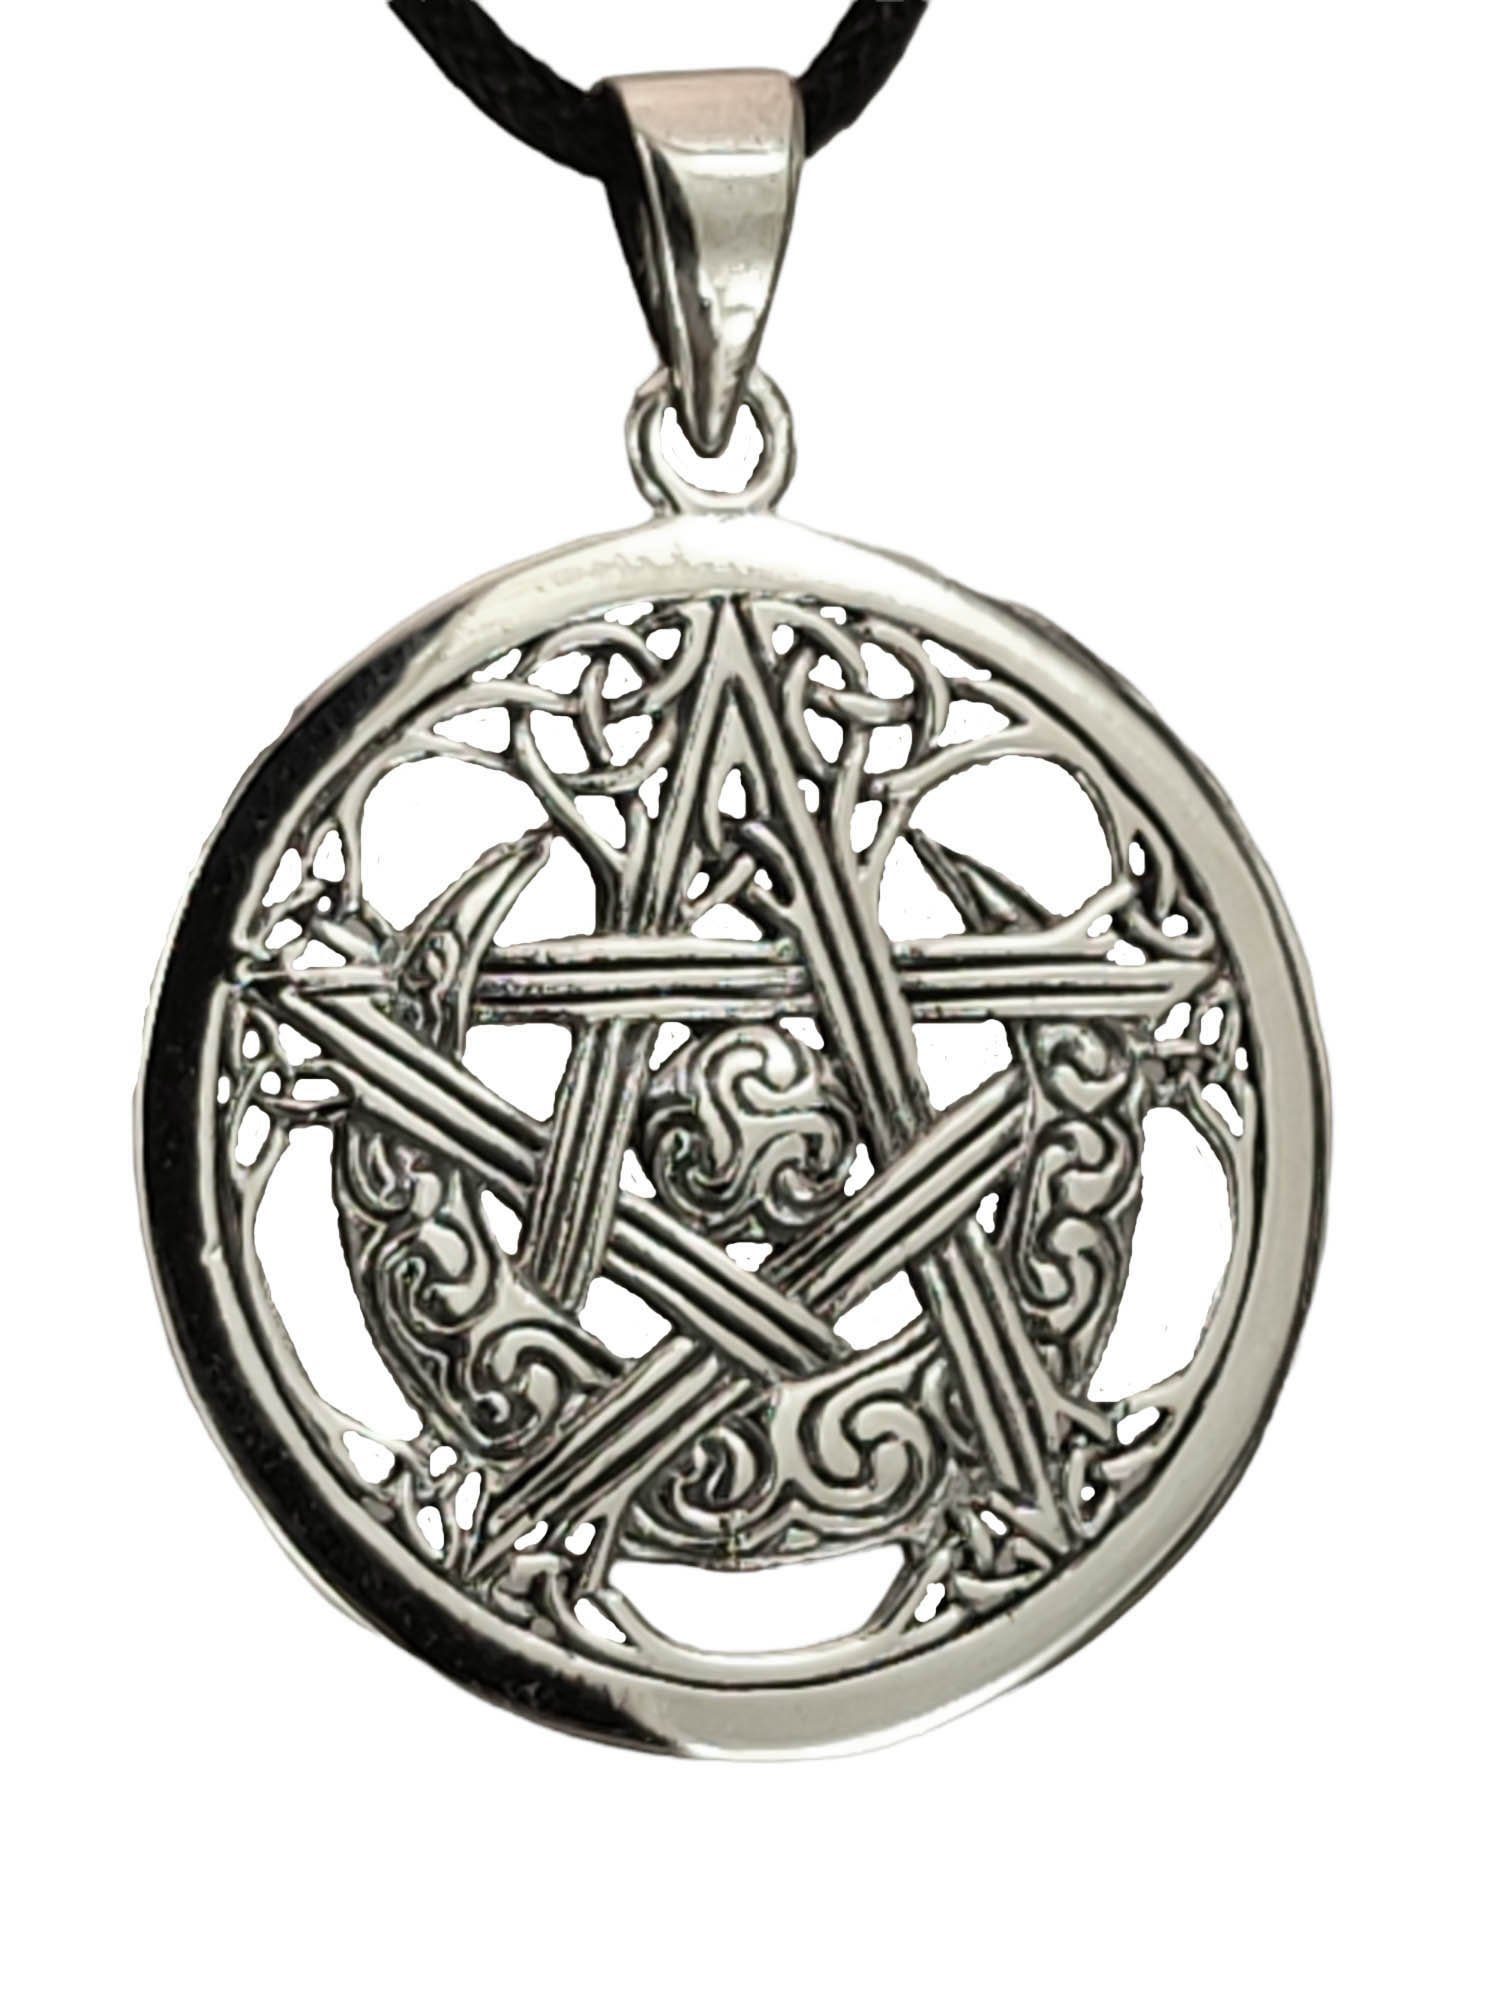 Stern Pentagramm Anhänger Bronze Schmuck Keltische Knoten 